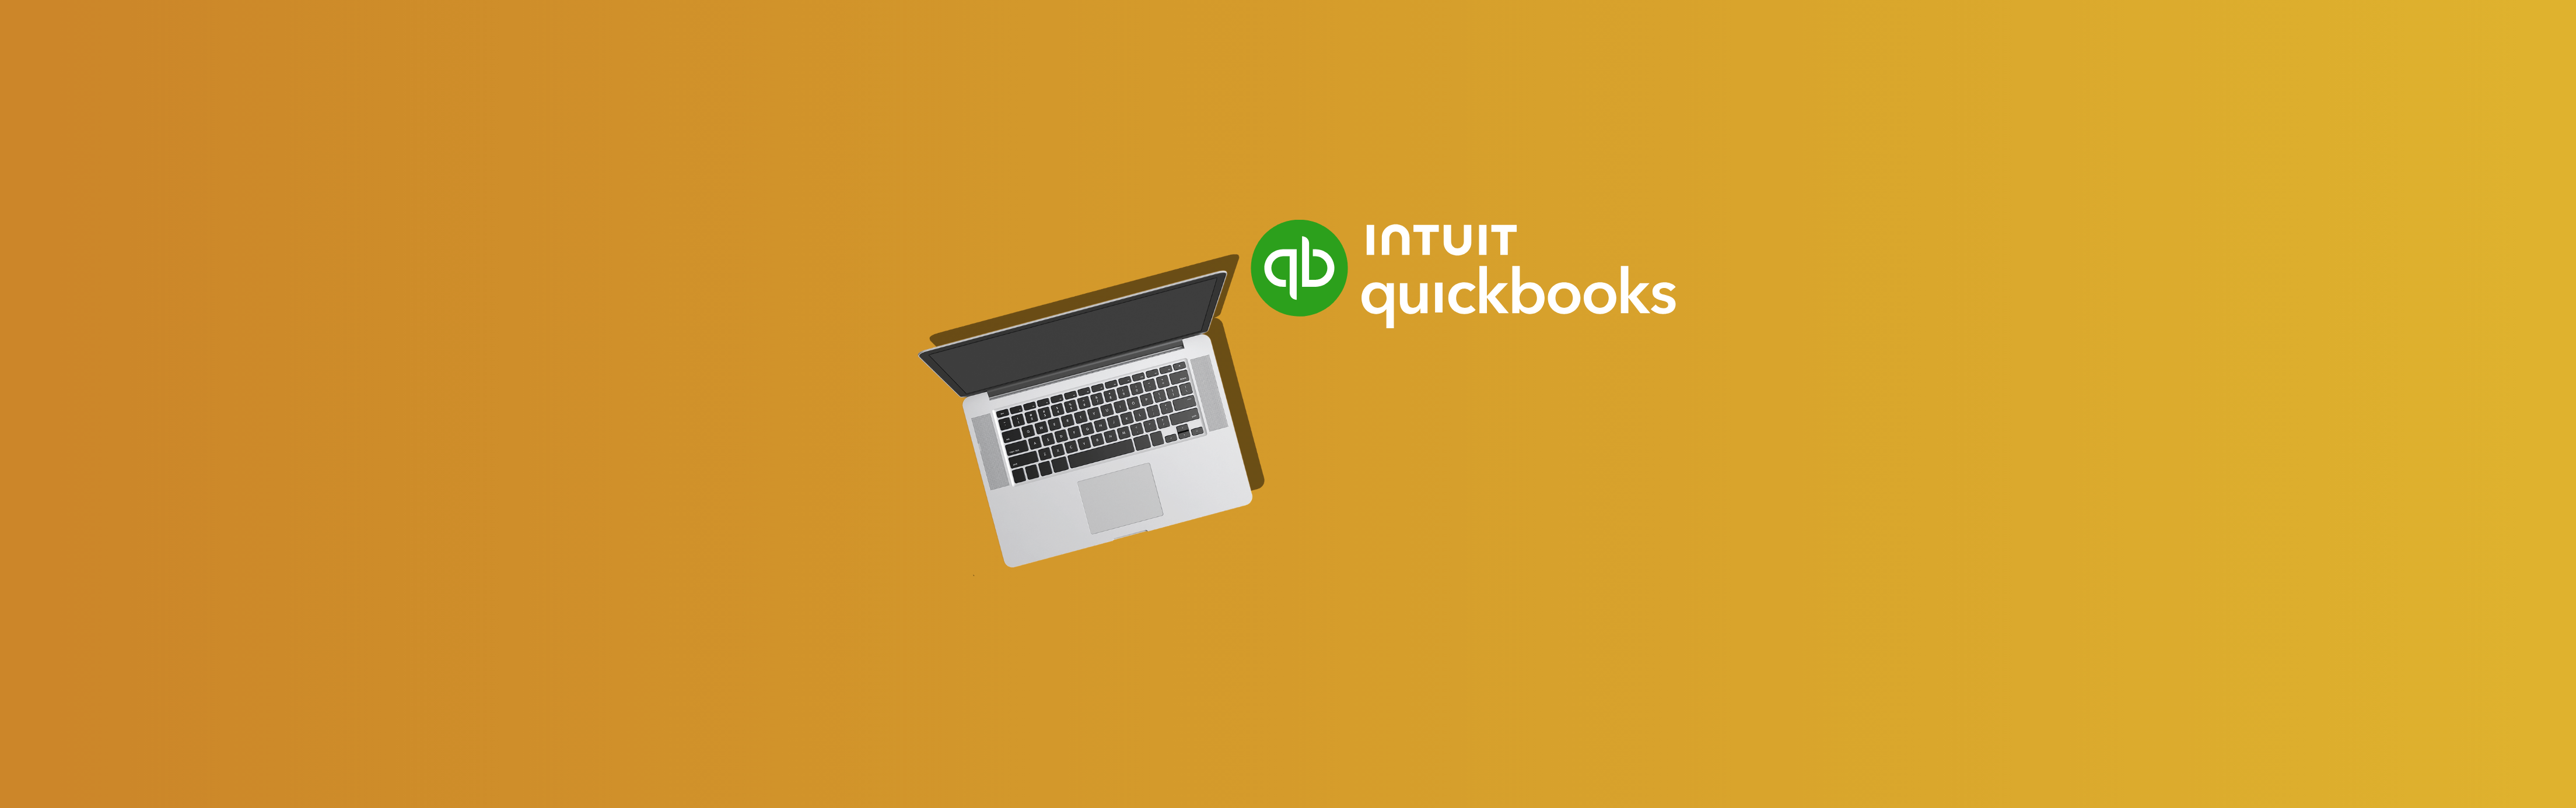 QuickBooks Online vs Desktop: Should I Choose QuickBooks Online or Desktop?